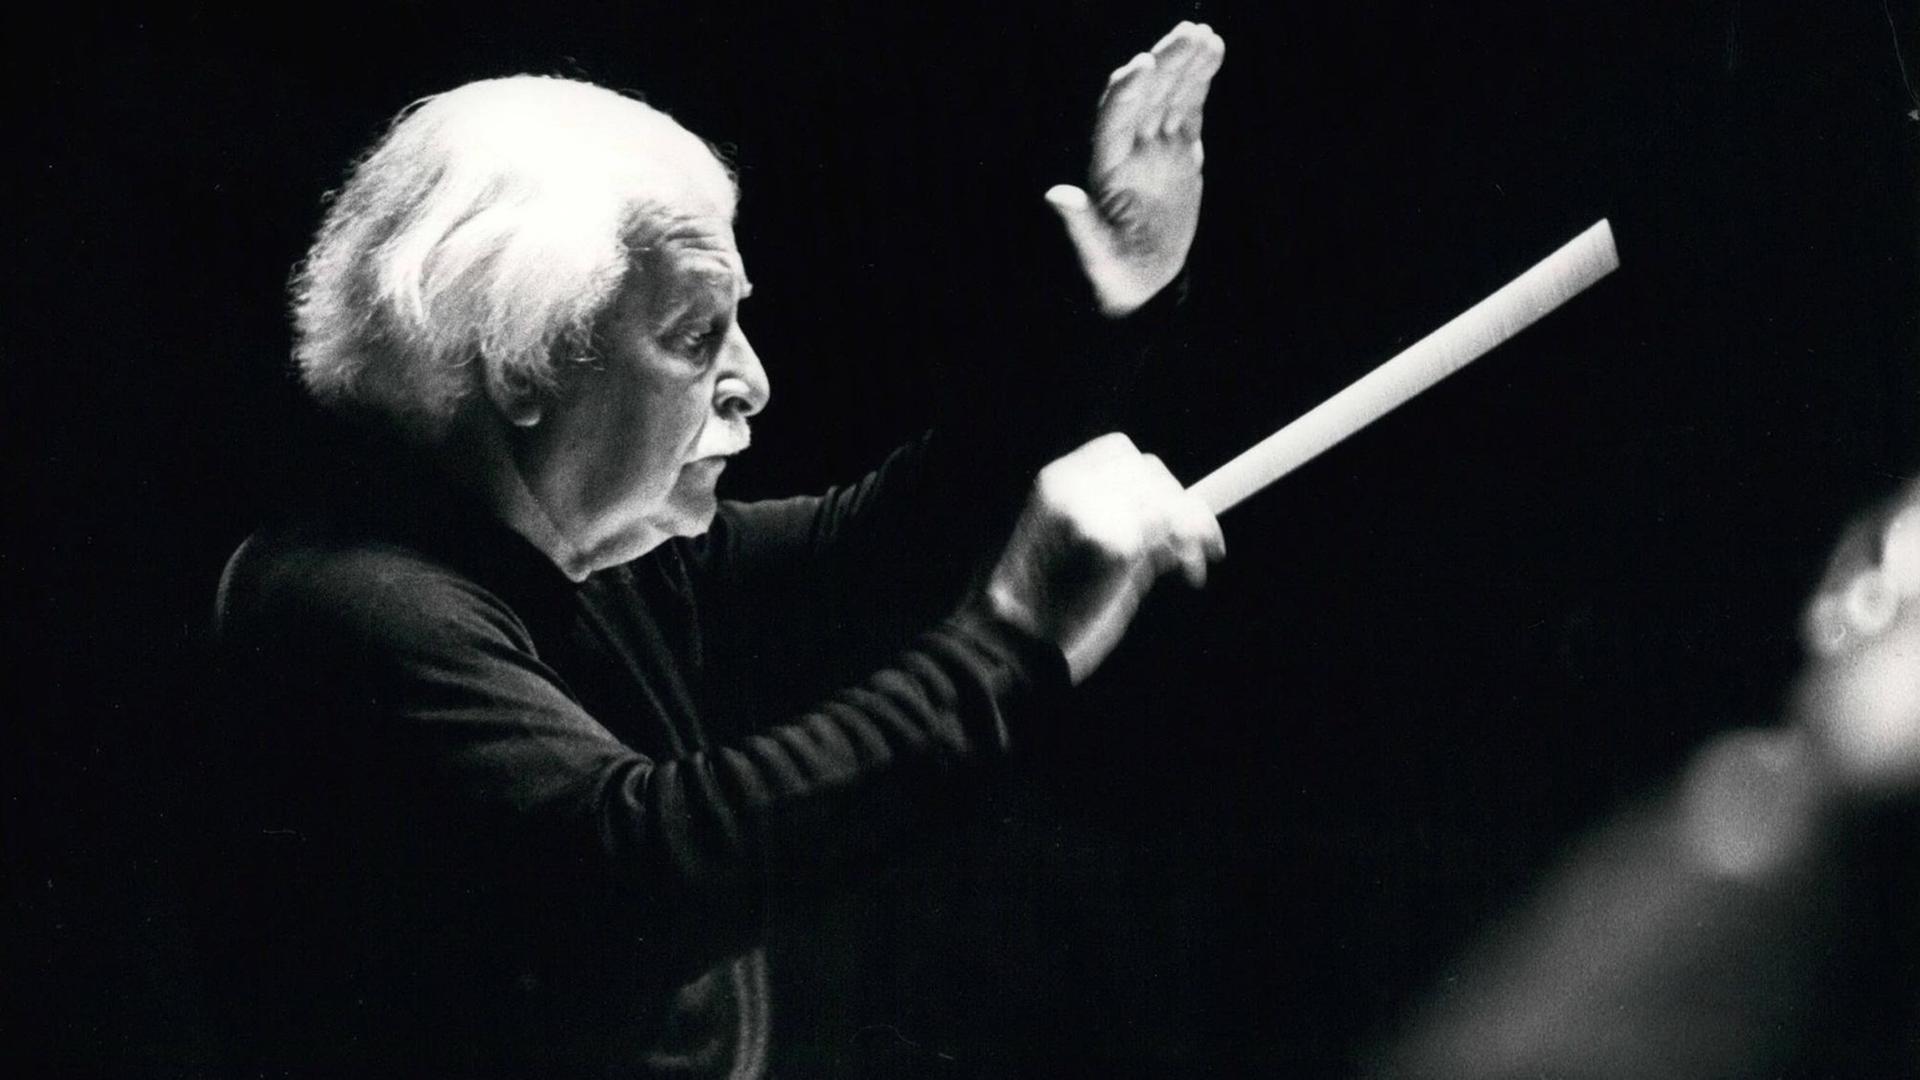 Schwarz-weiß Foto, Arthur Fiedler dirigiert mit einem Taktstock, er trägt einen schwarzen Pullover, man sieht ihn von der rechten Seite im Profil